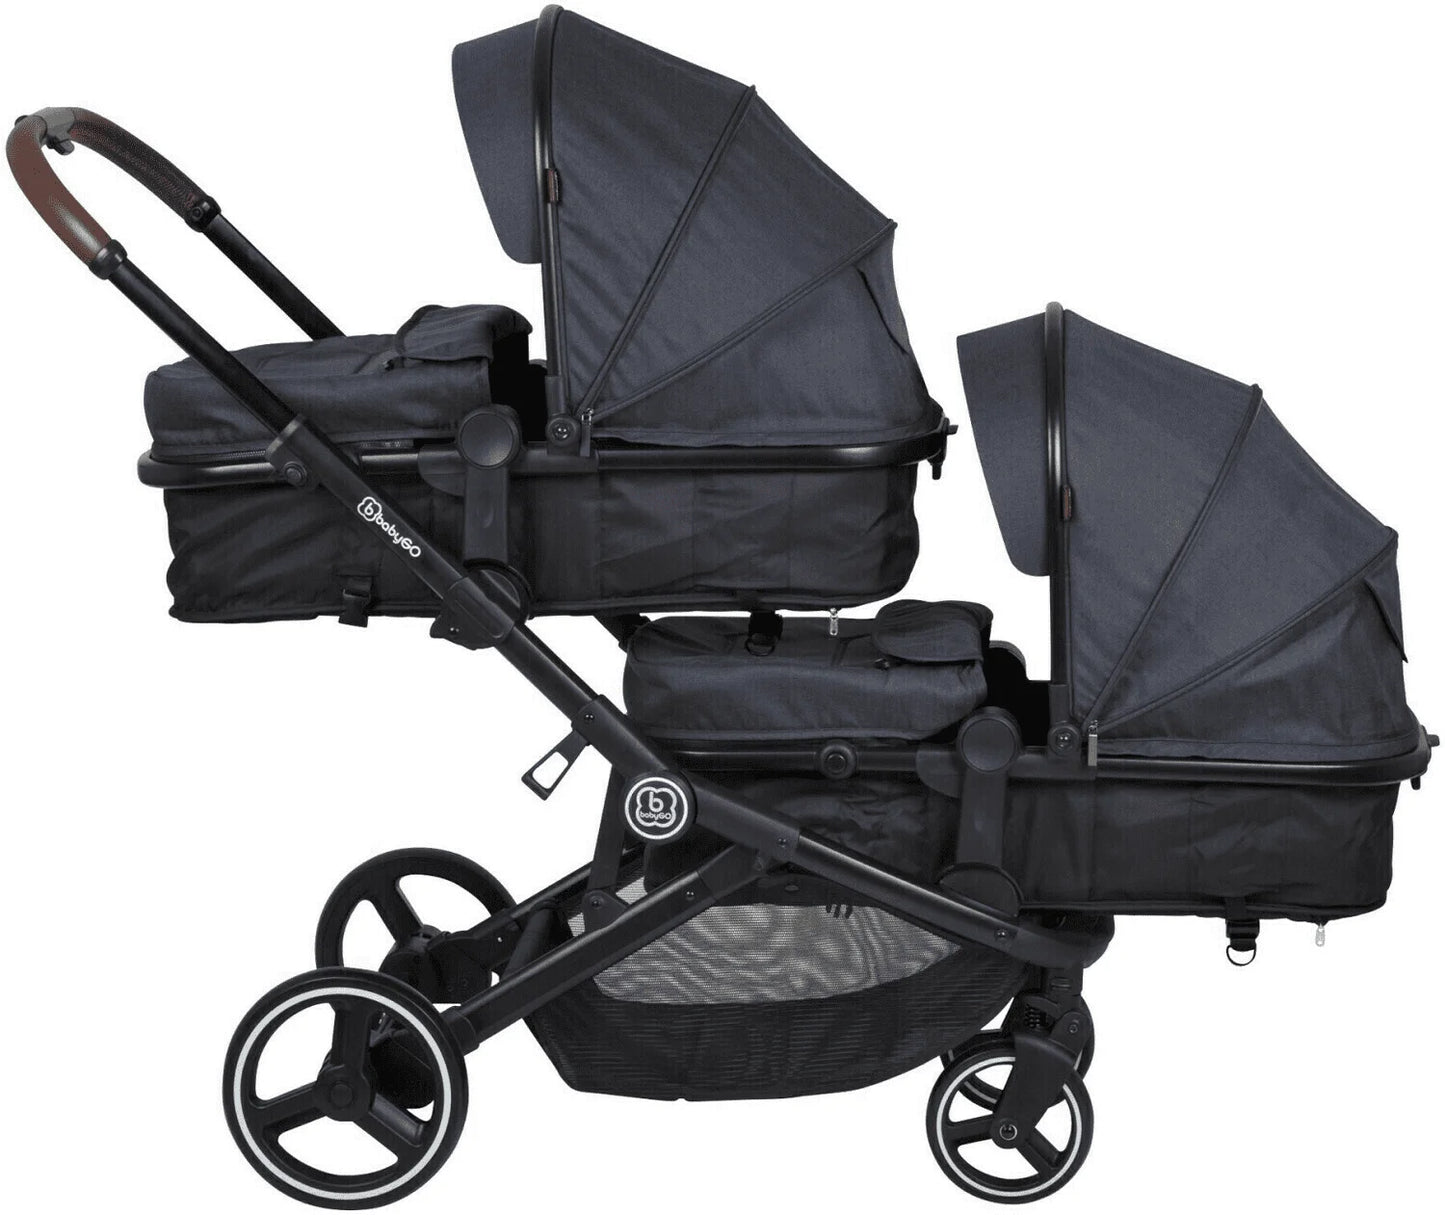 BabyGo - Twinner Stroller